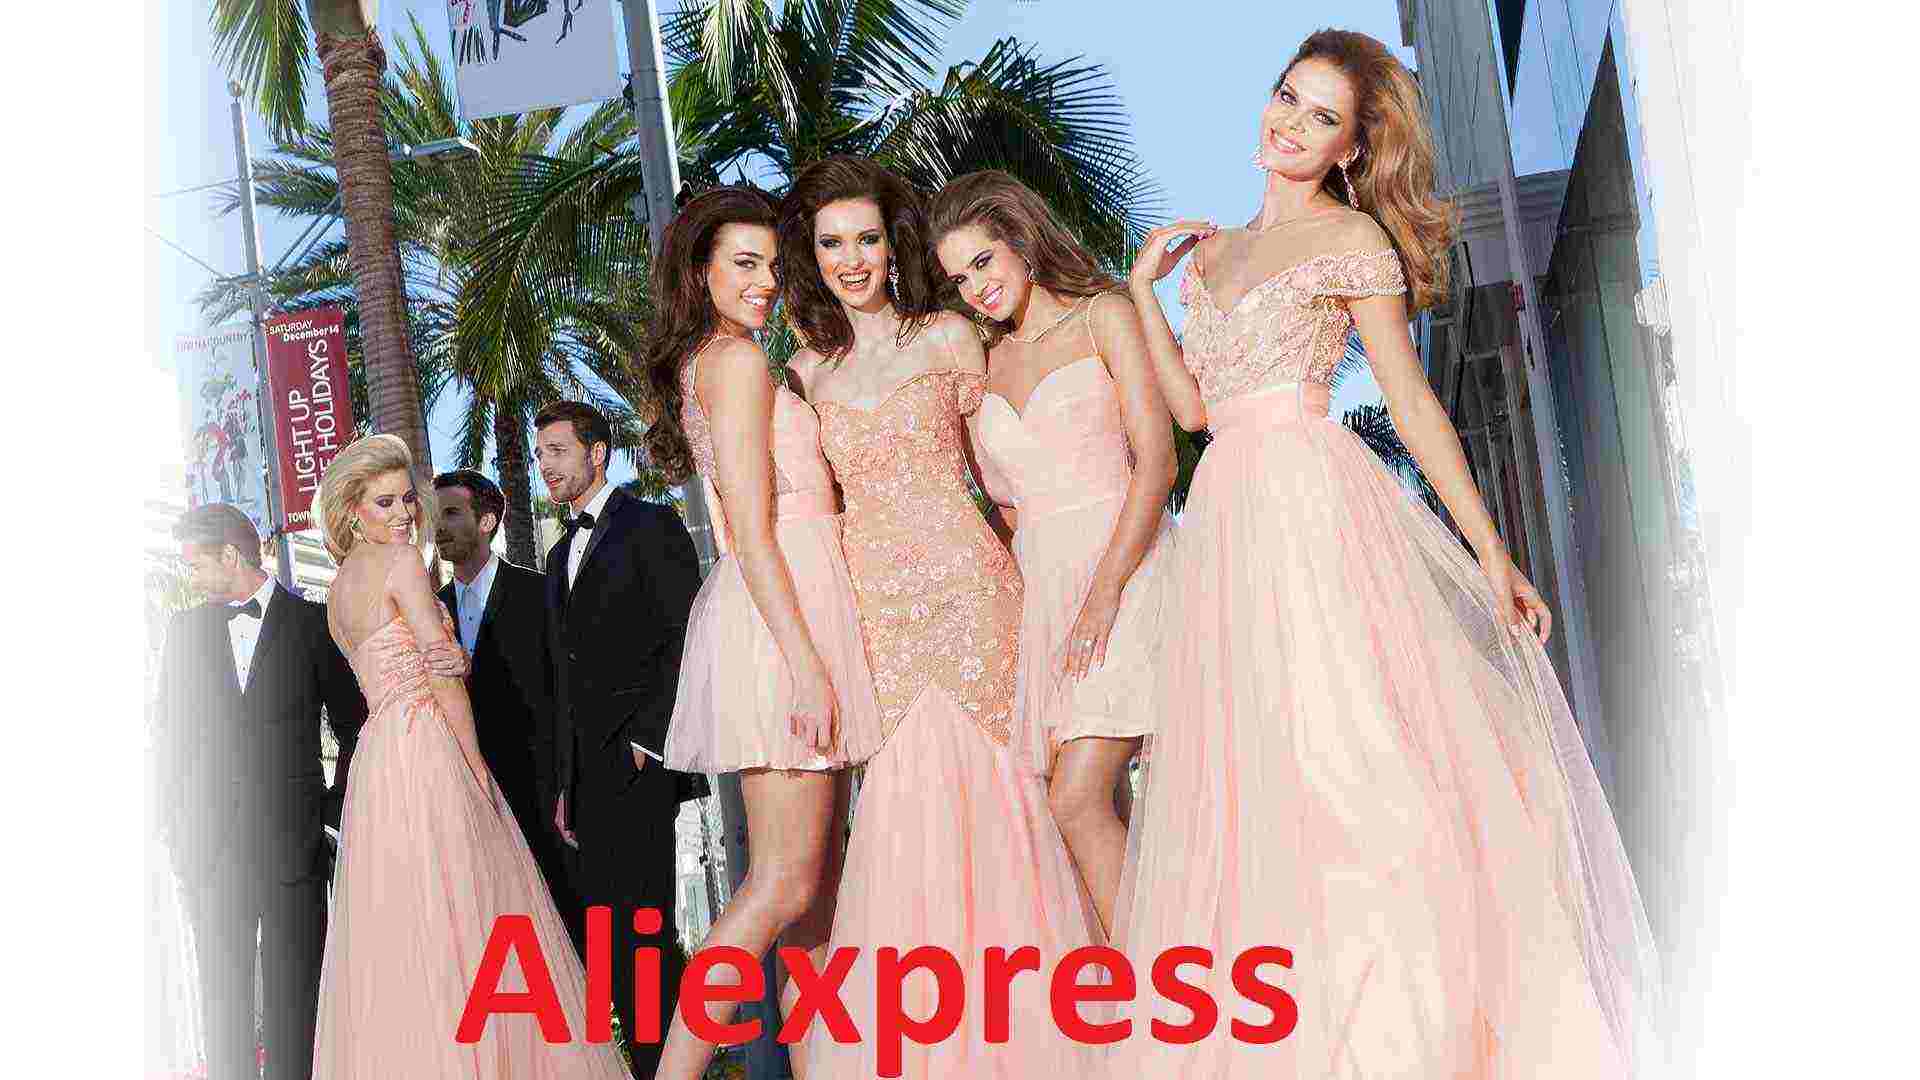 Дешевые, но популярные и хорошие платья из Aliexpress на русском